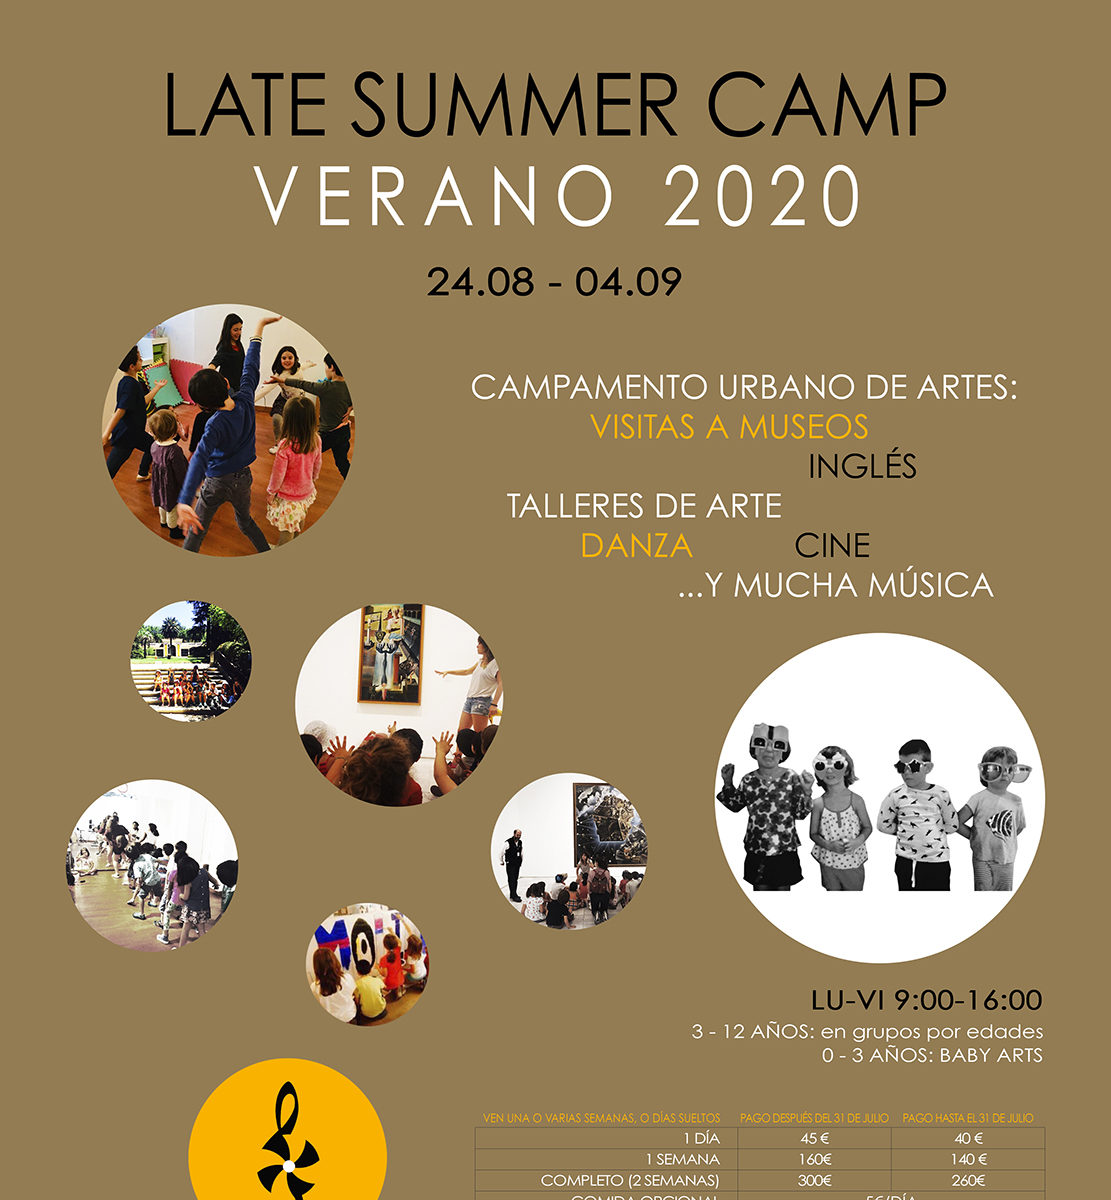 Campamento Urbano de Artes 2020, Verano en El Molino de Las Letras, Escuela de Música, Danza y otras Artes en el corazón de Madrid. Late Summer Camp